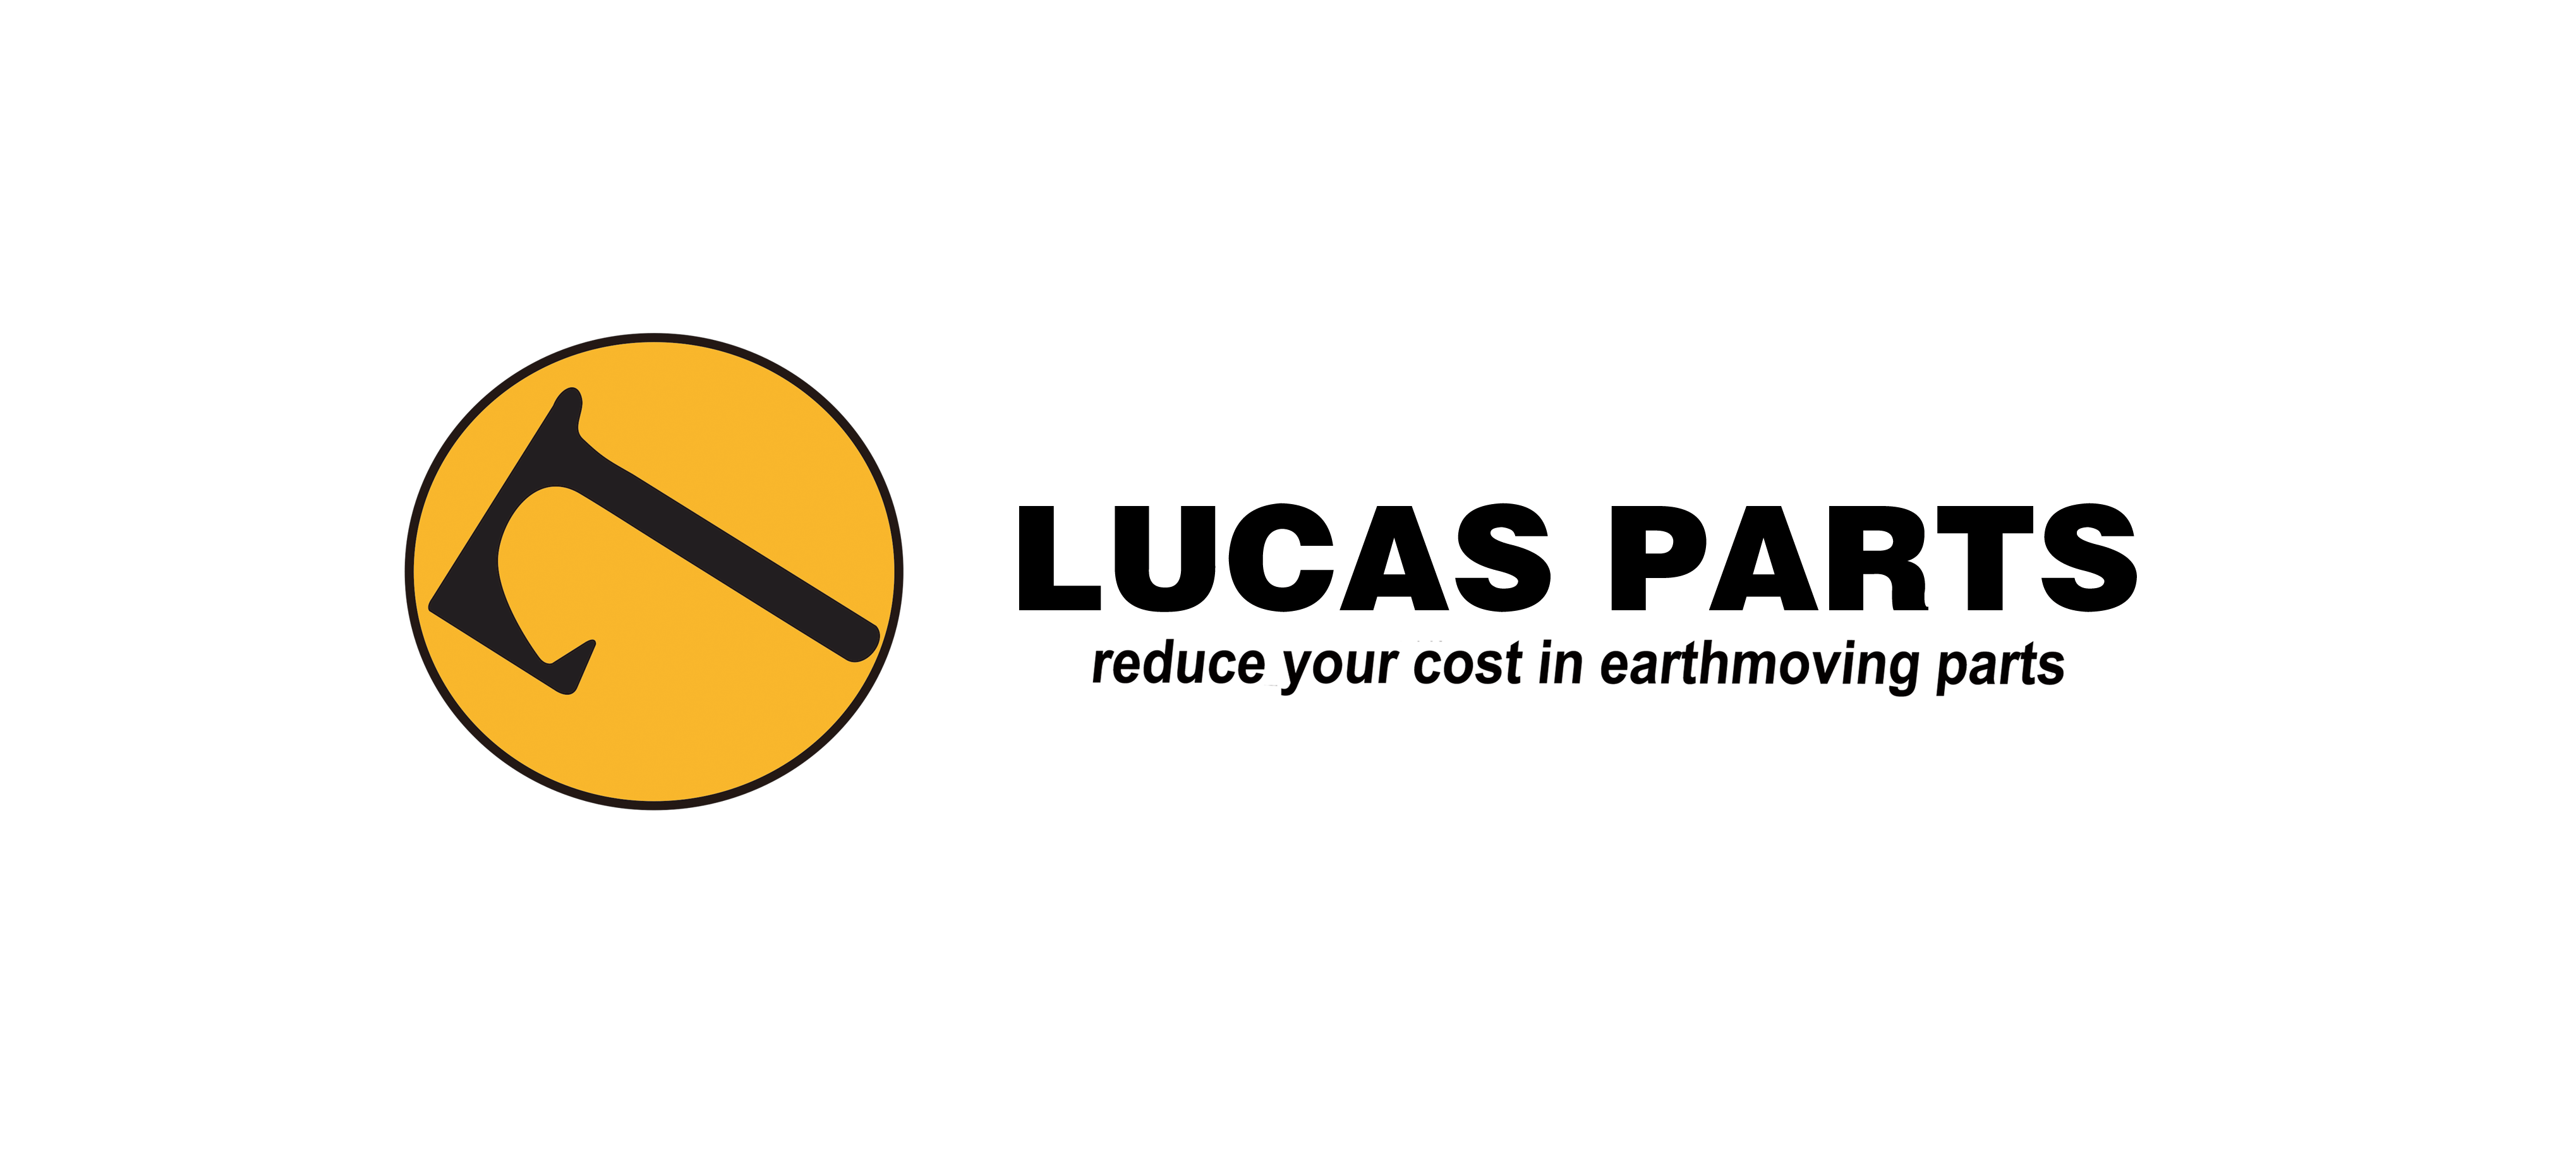 LUCAS PARTS